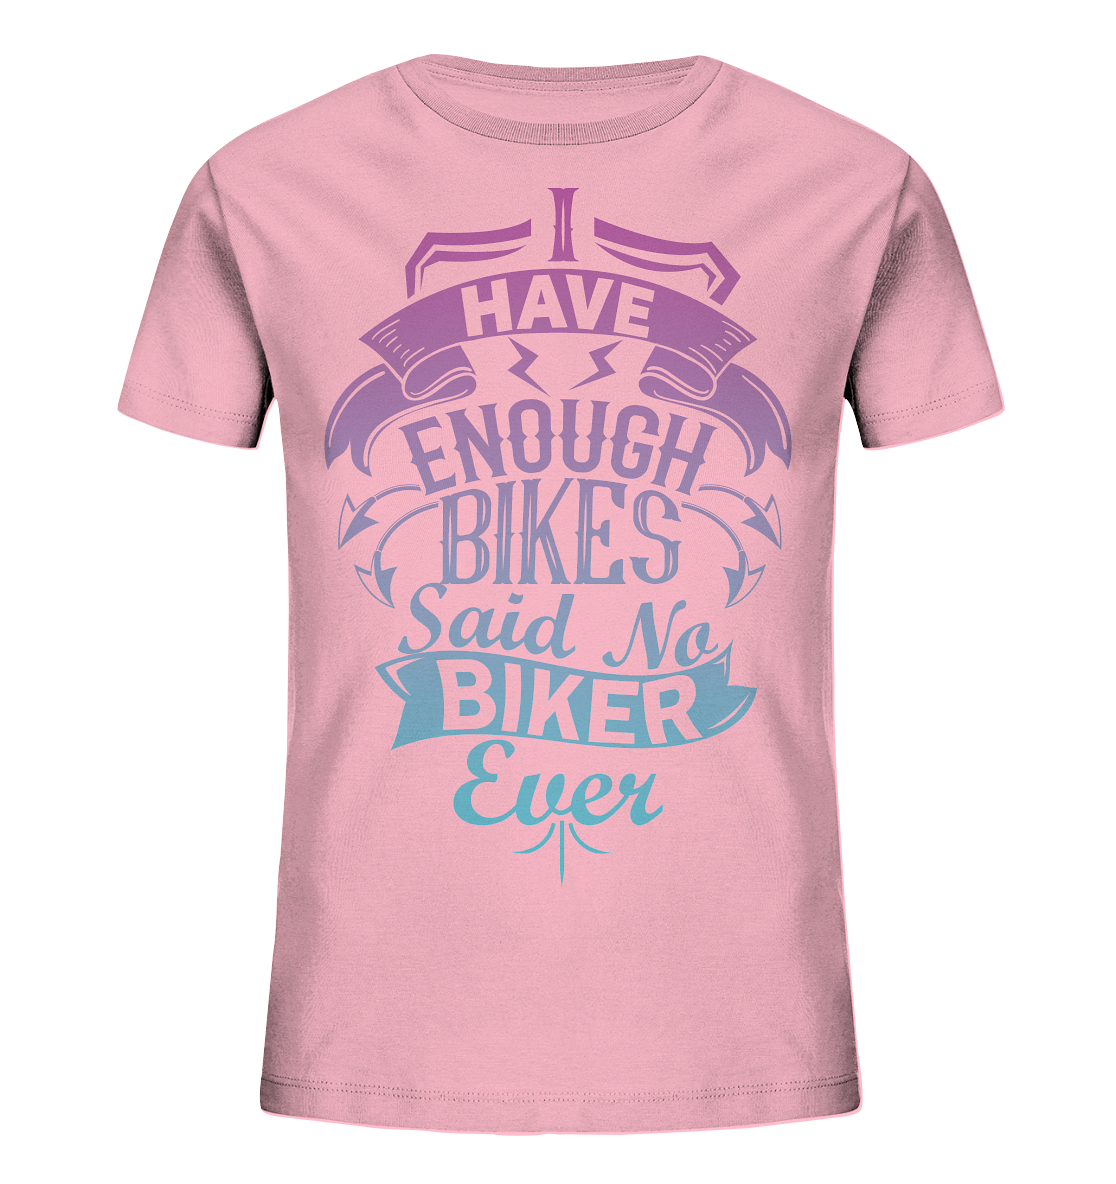 Enough Bikes - Kids Organic Shirt